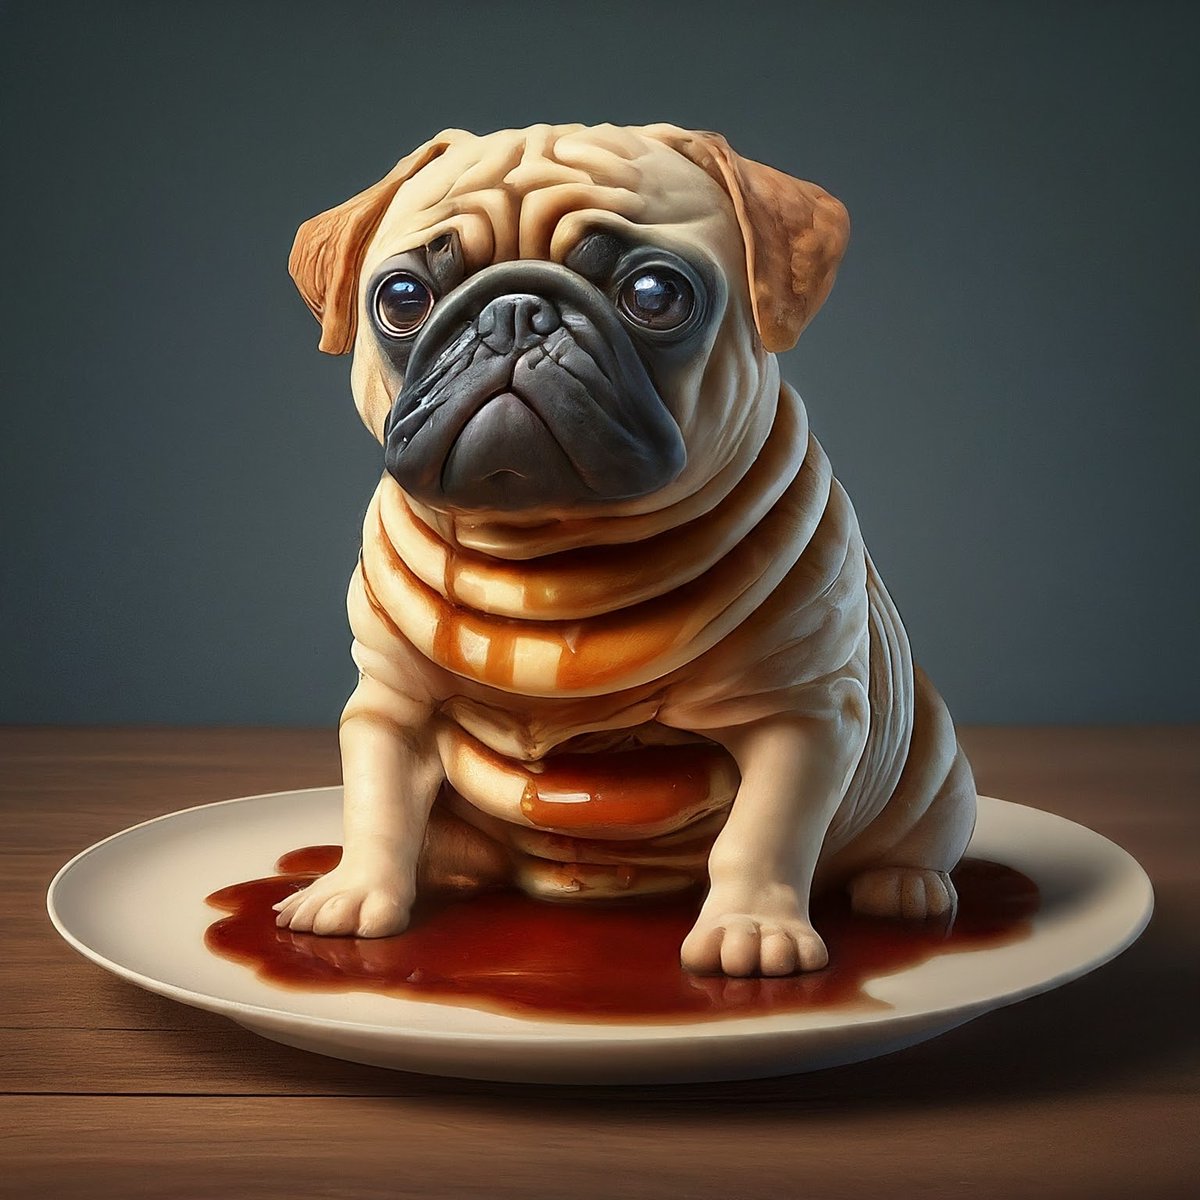 Weird, weird, weird of the today's special pancake! 

#PugArt #ImageFx #Pug #PancakePug #AIArt #GoogleLabs #Bard